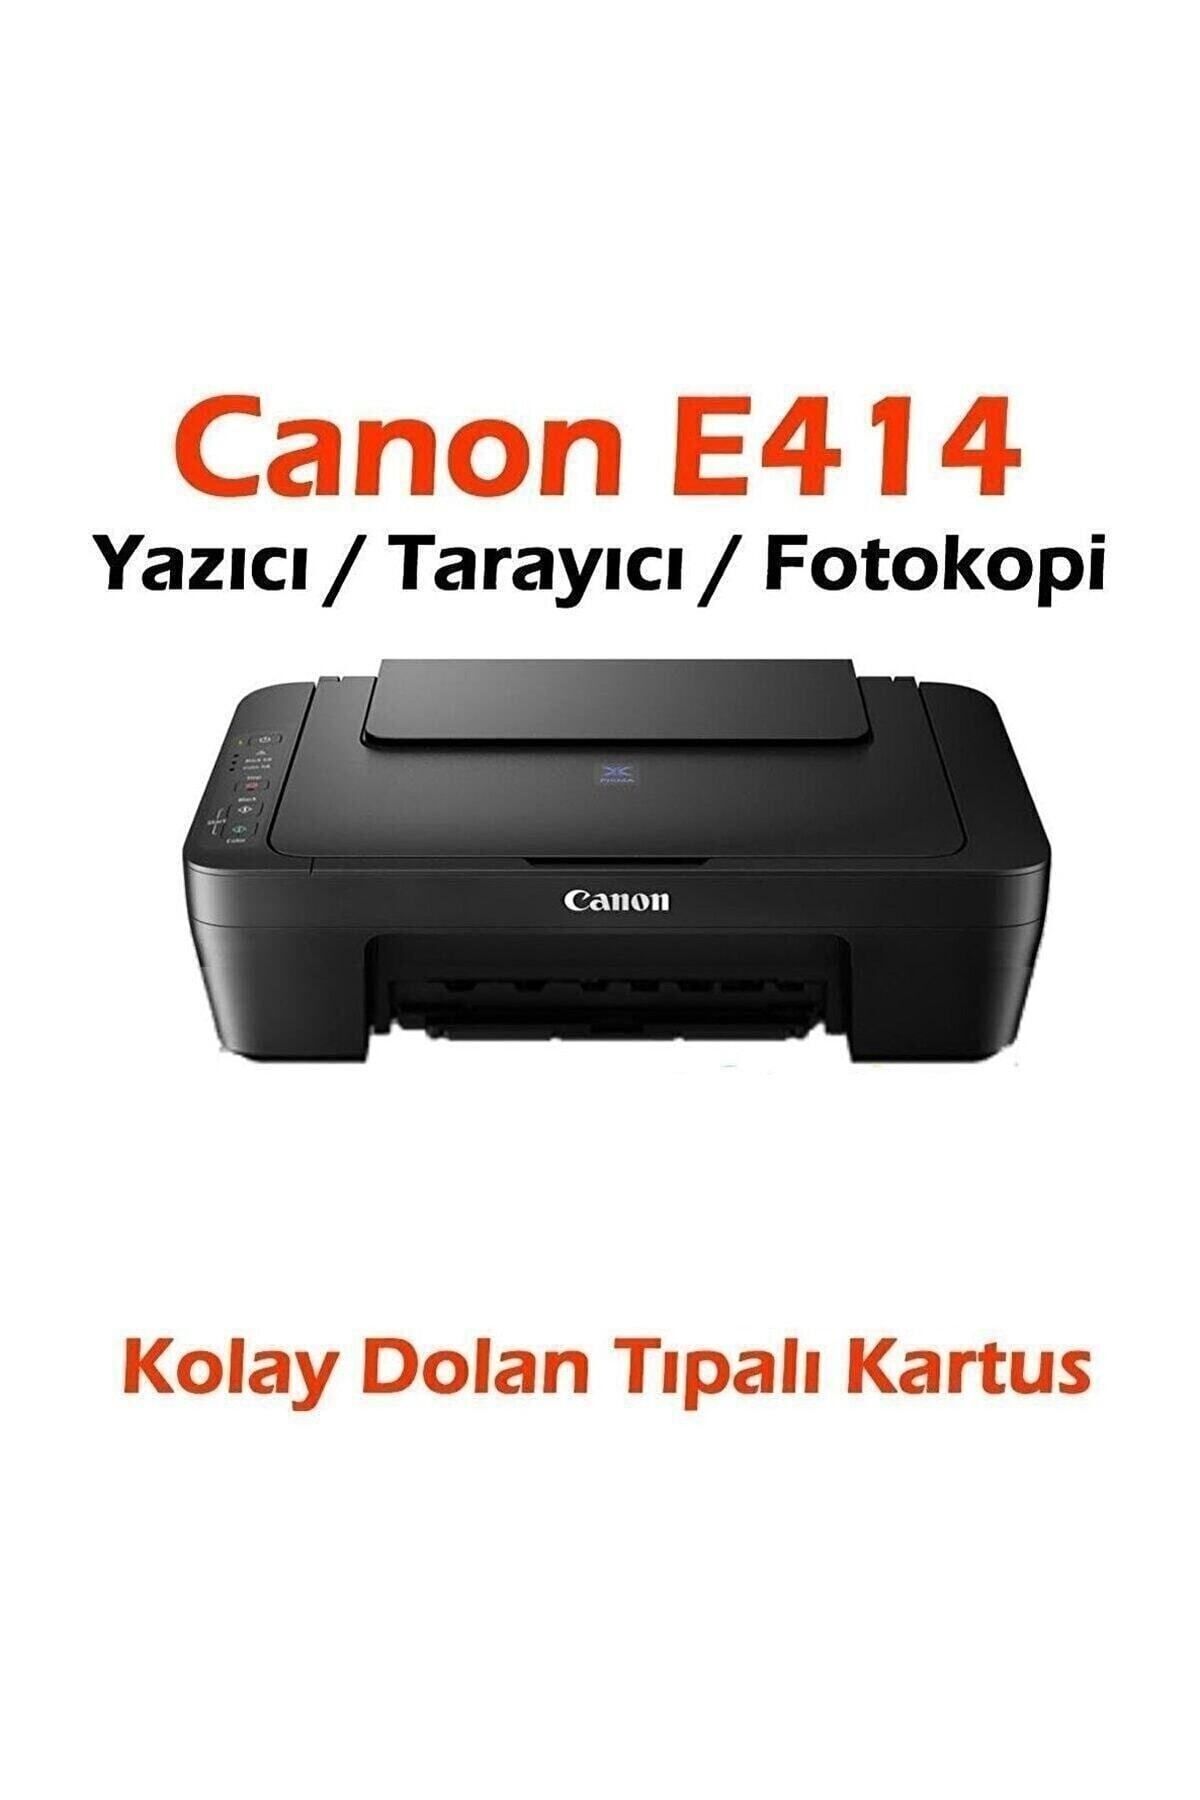 Canon Dolan Kartuşlu E414 Yazıcı / Tarayıcı / Fotokopi